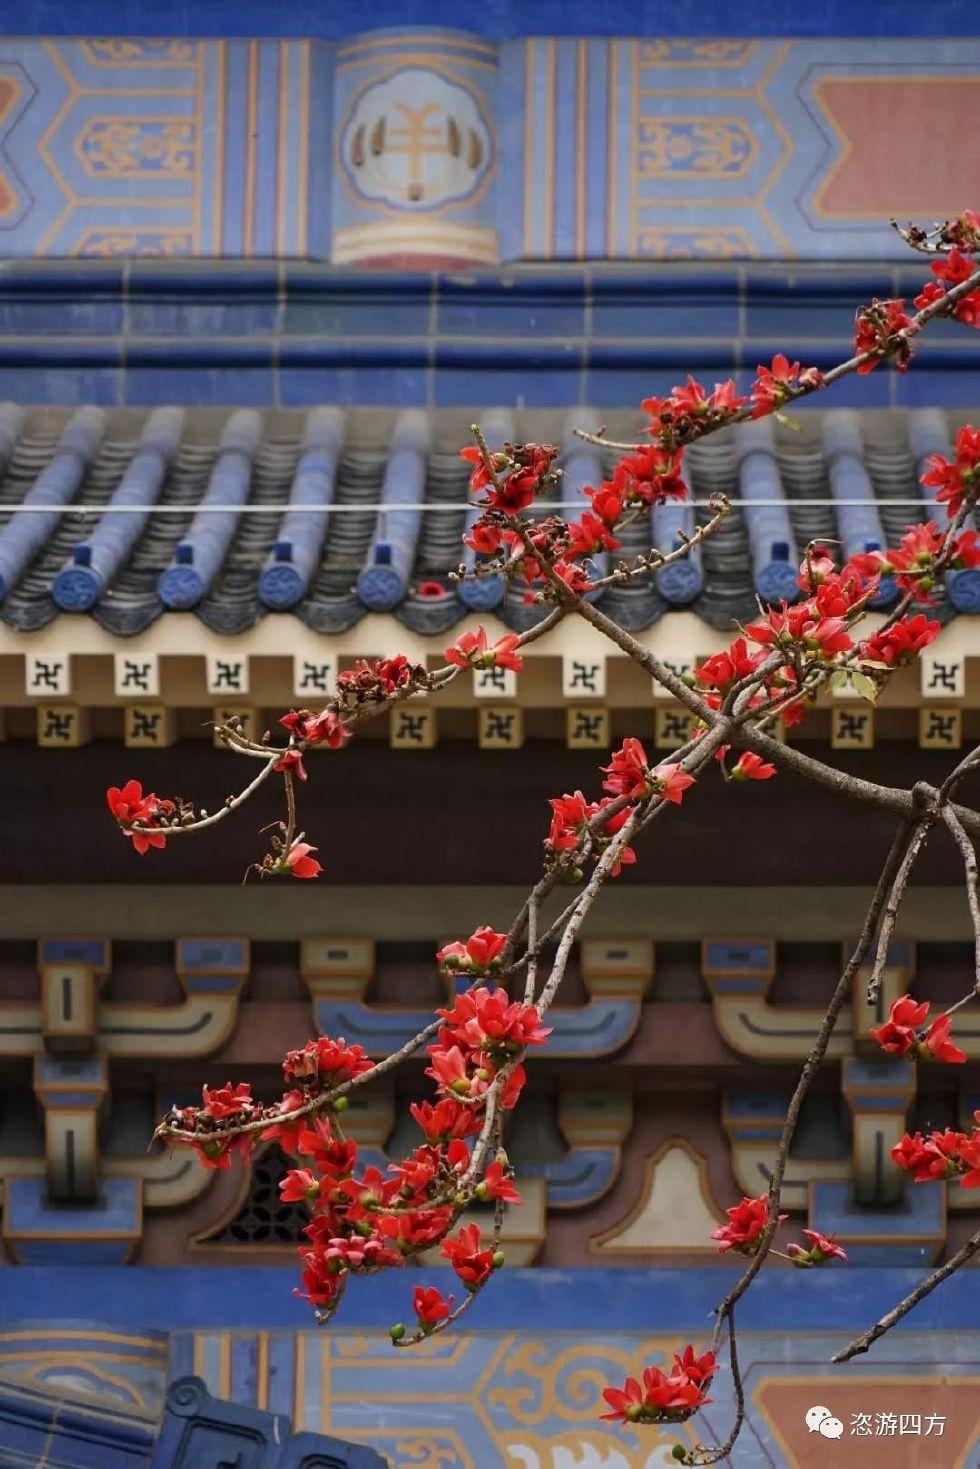 广州花城之春木棉花盛开的天空你见过哪些美景呢